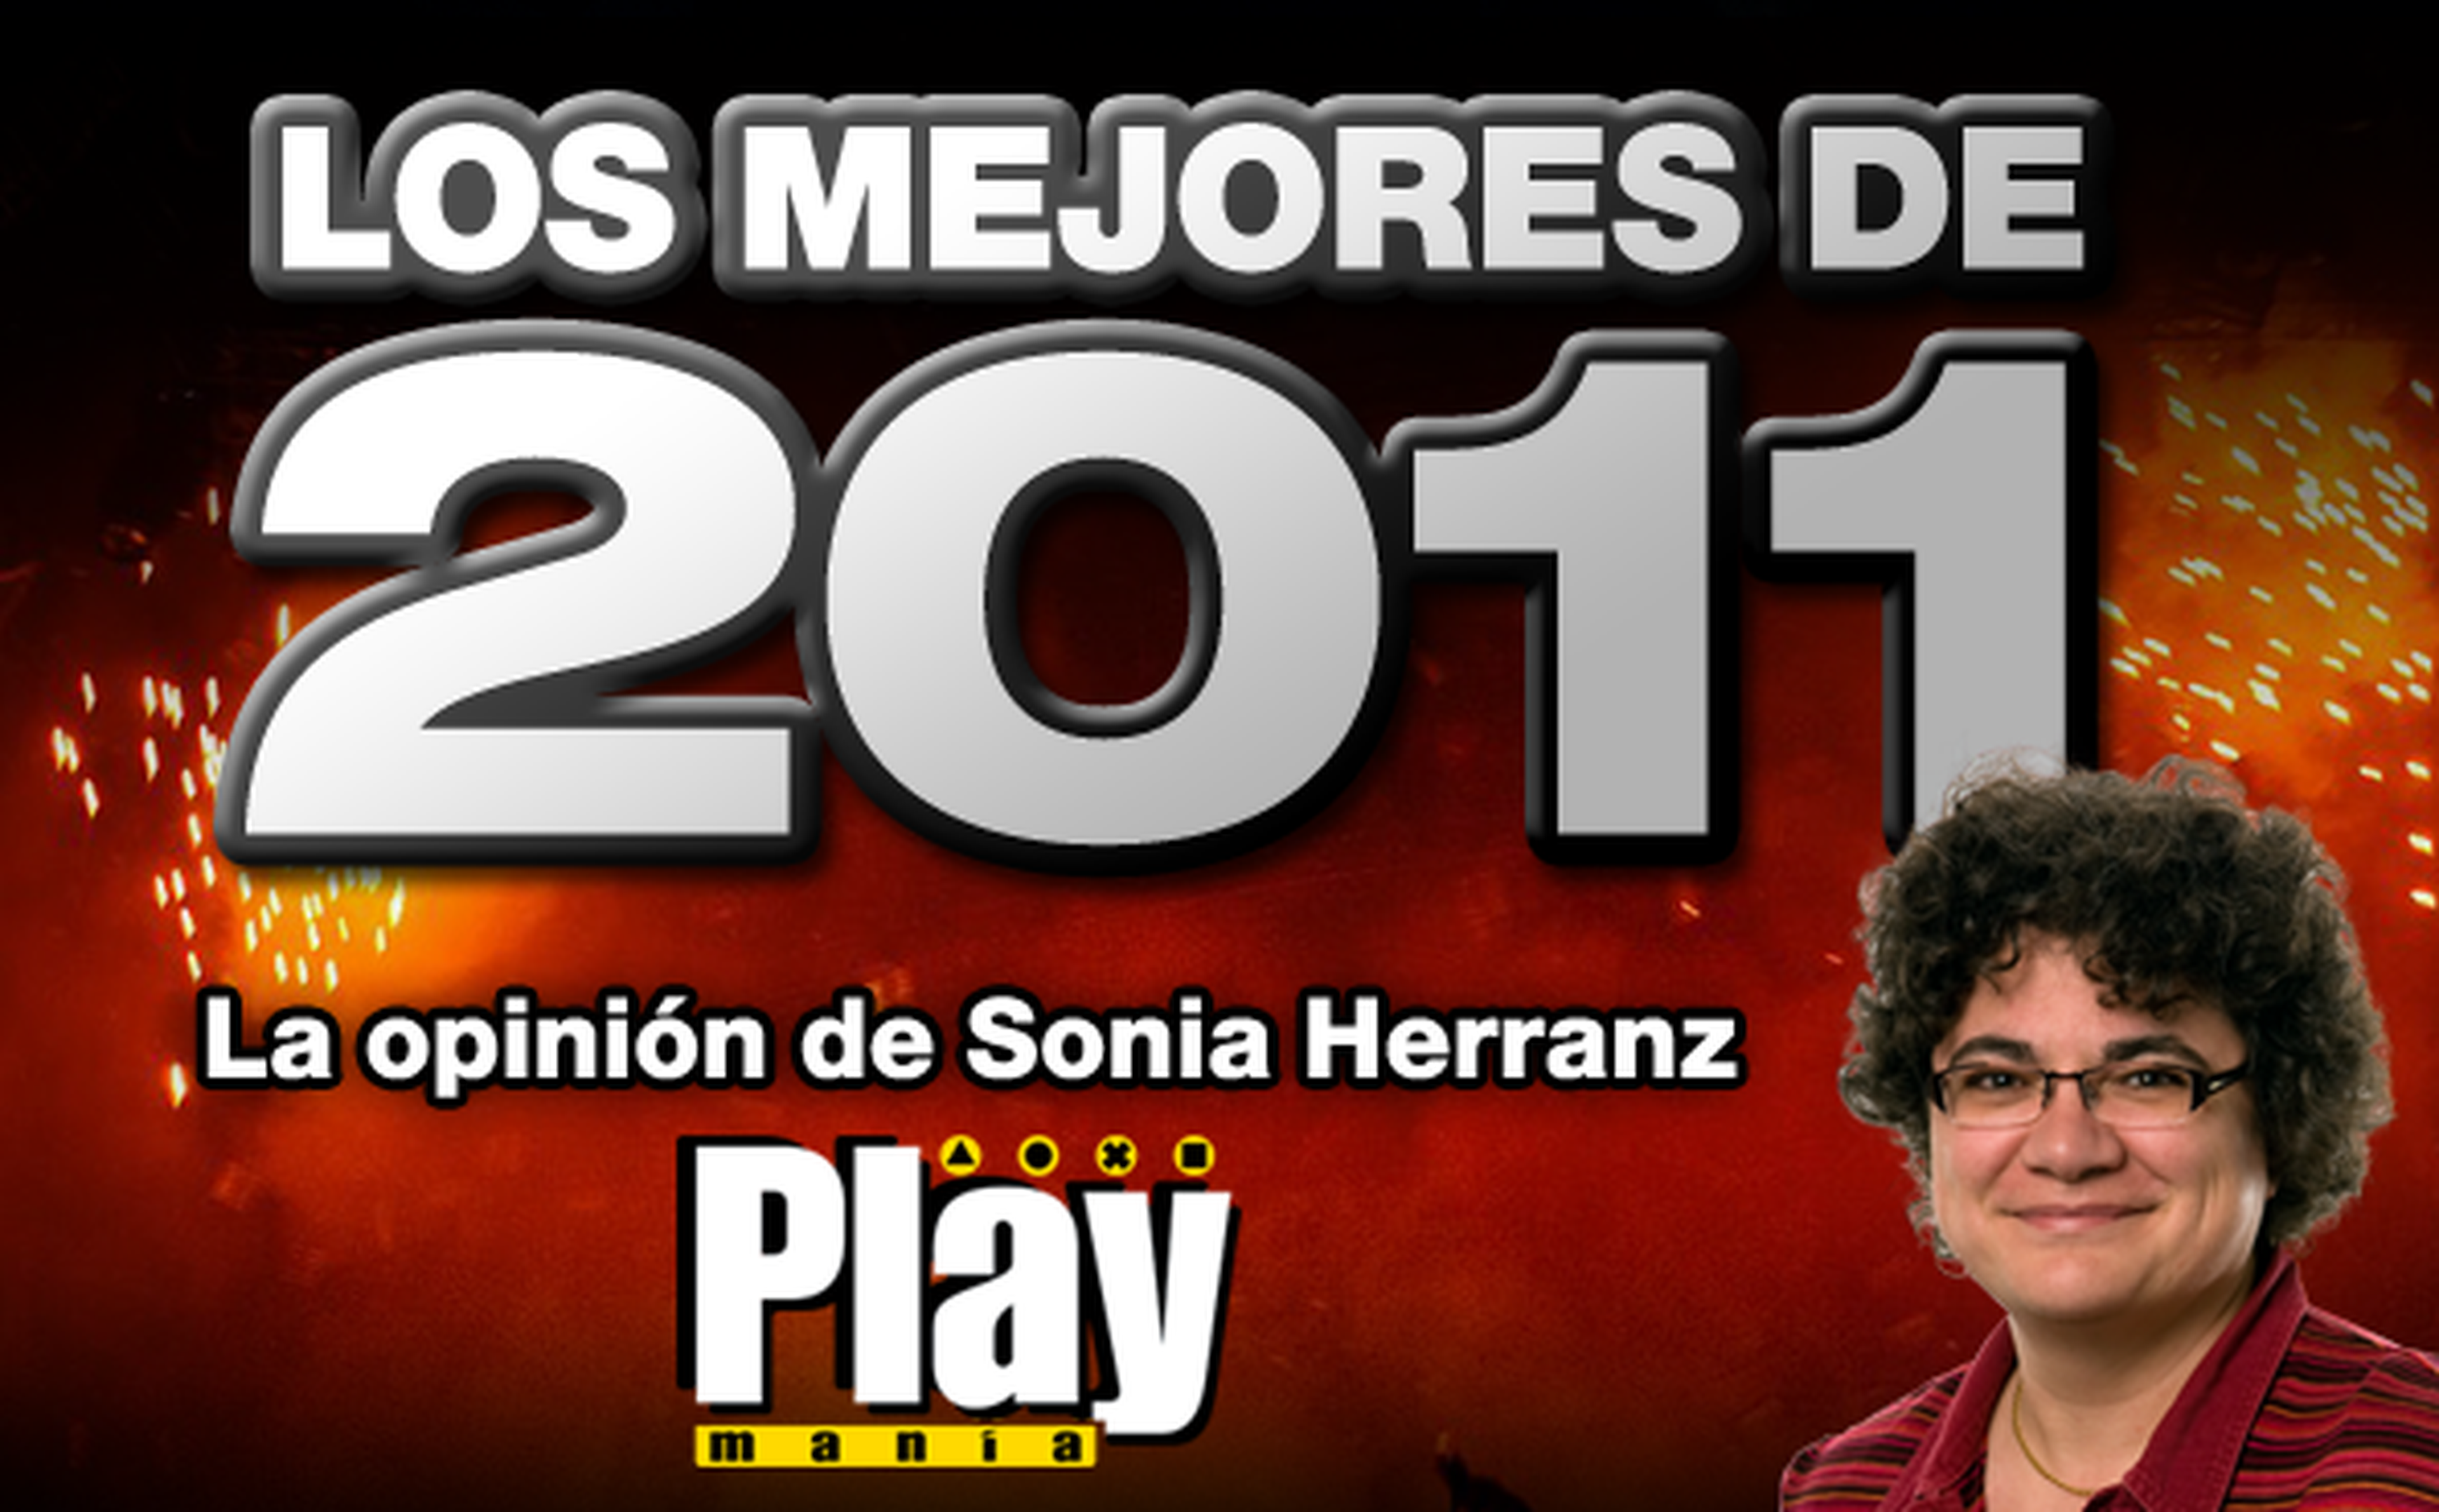 Los mejores de 2011: Sonia Herranz